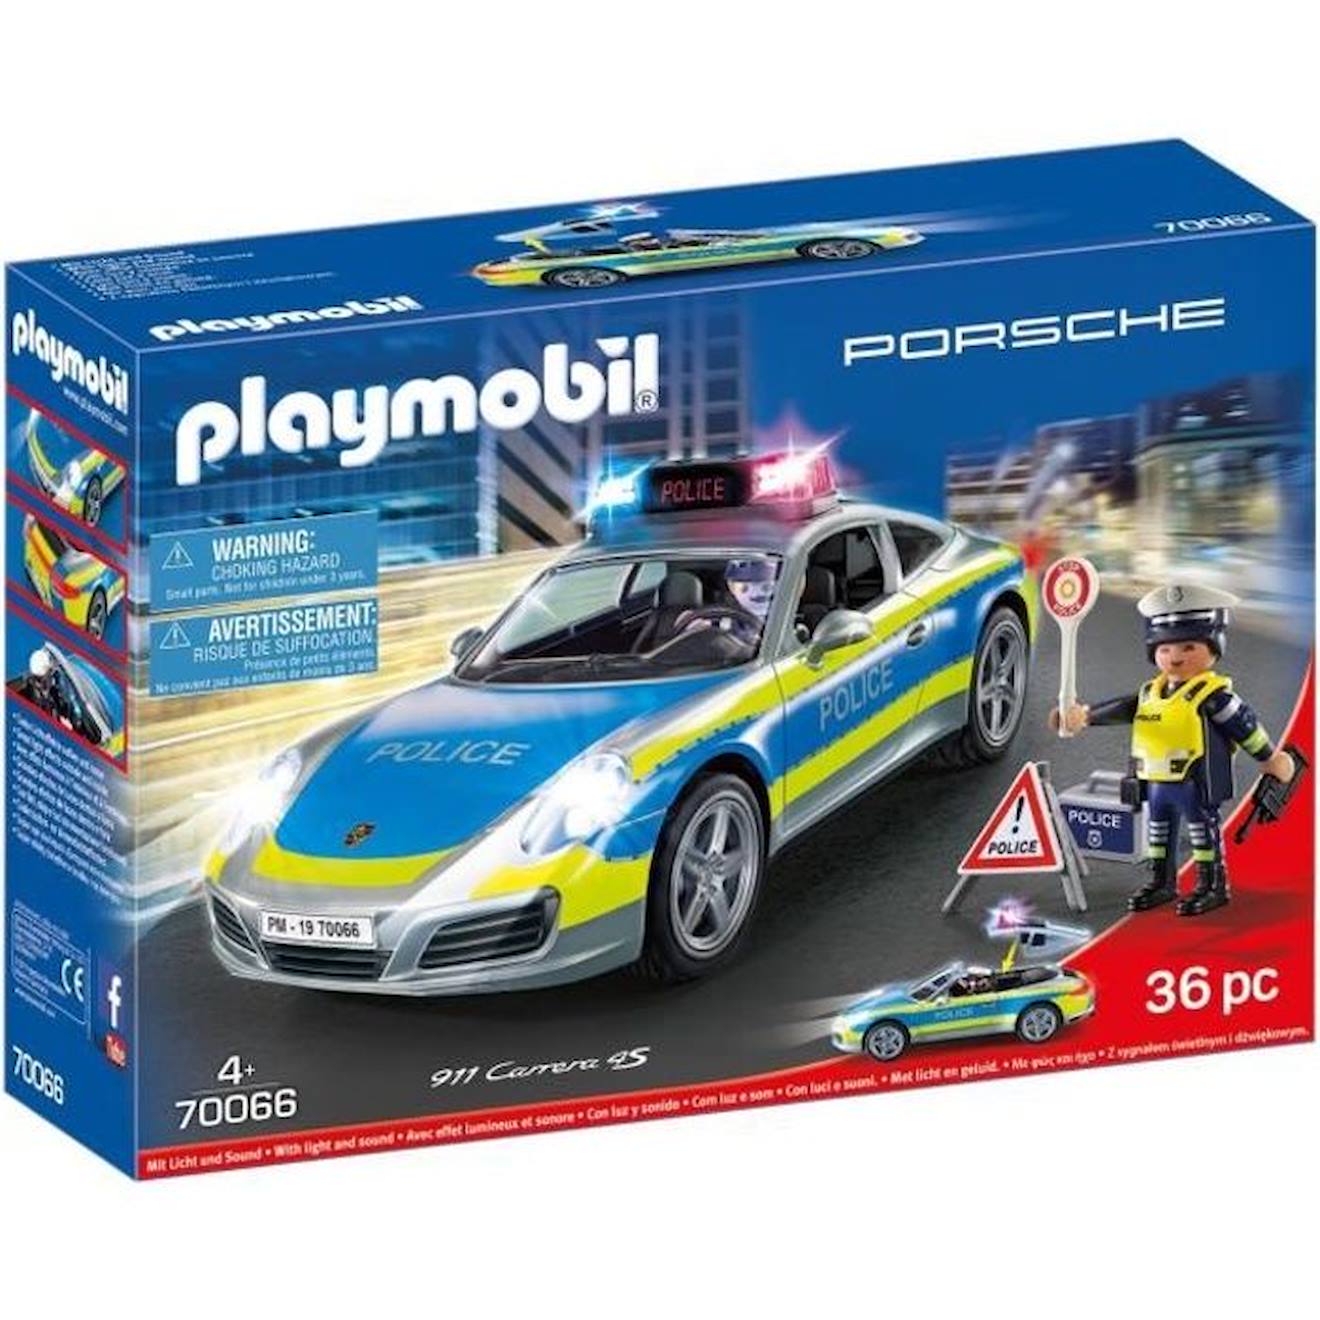 Playmobil - Porsche 911 Carrera 4s Police - 2 Policiers Et Accessoires - Effets Sonores Et Lumineux 